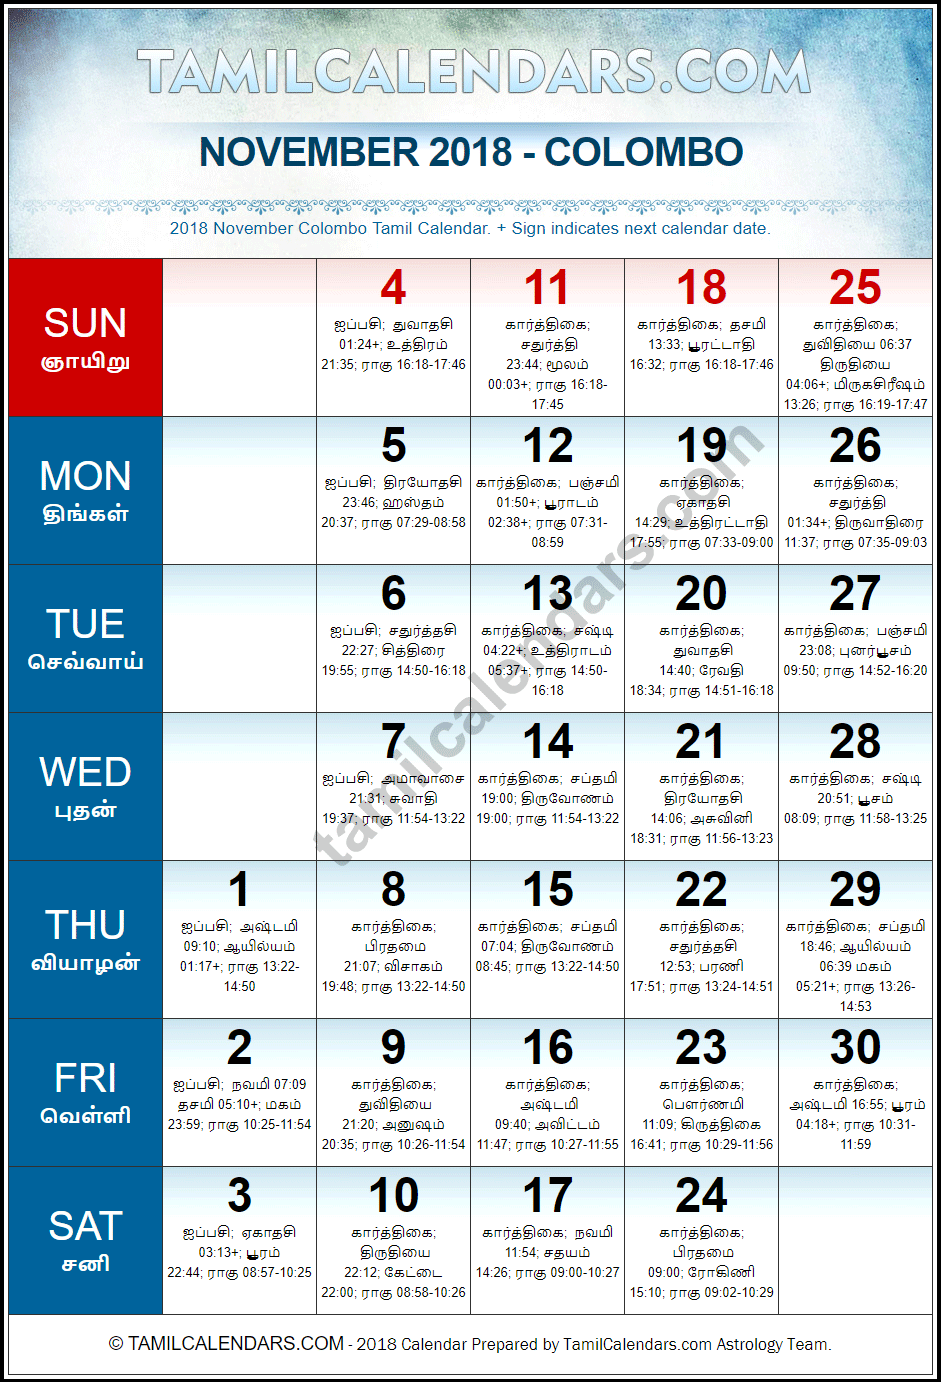 November 2018 Tamil Calendar for Sri Lanka (Colombo)